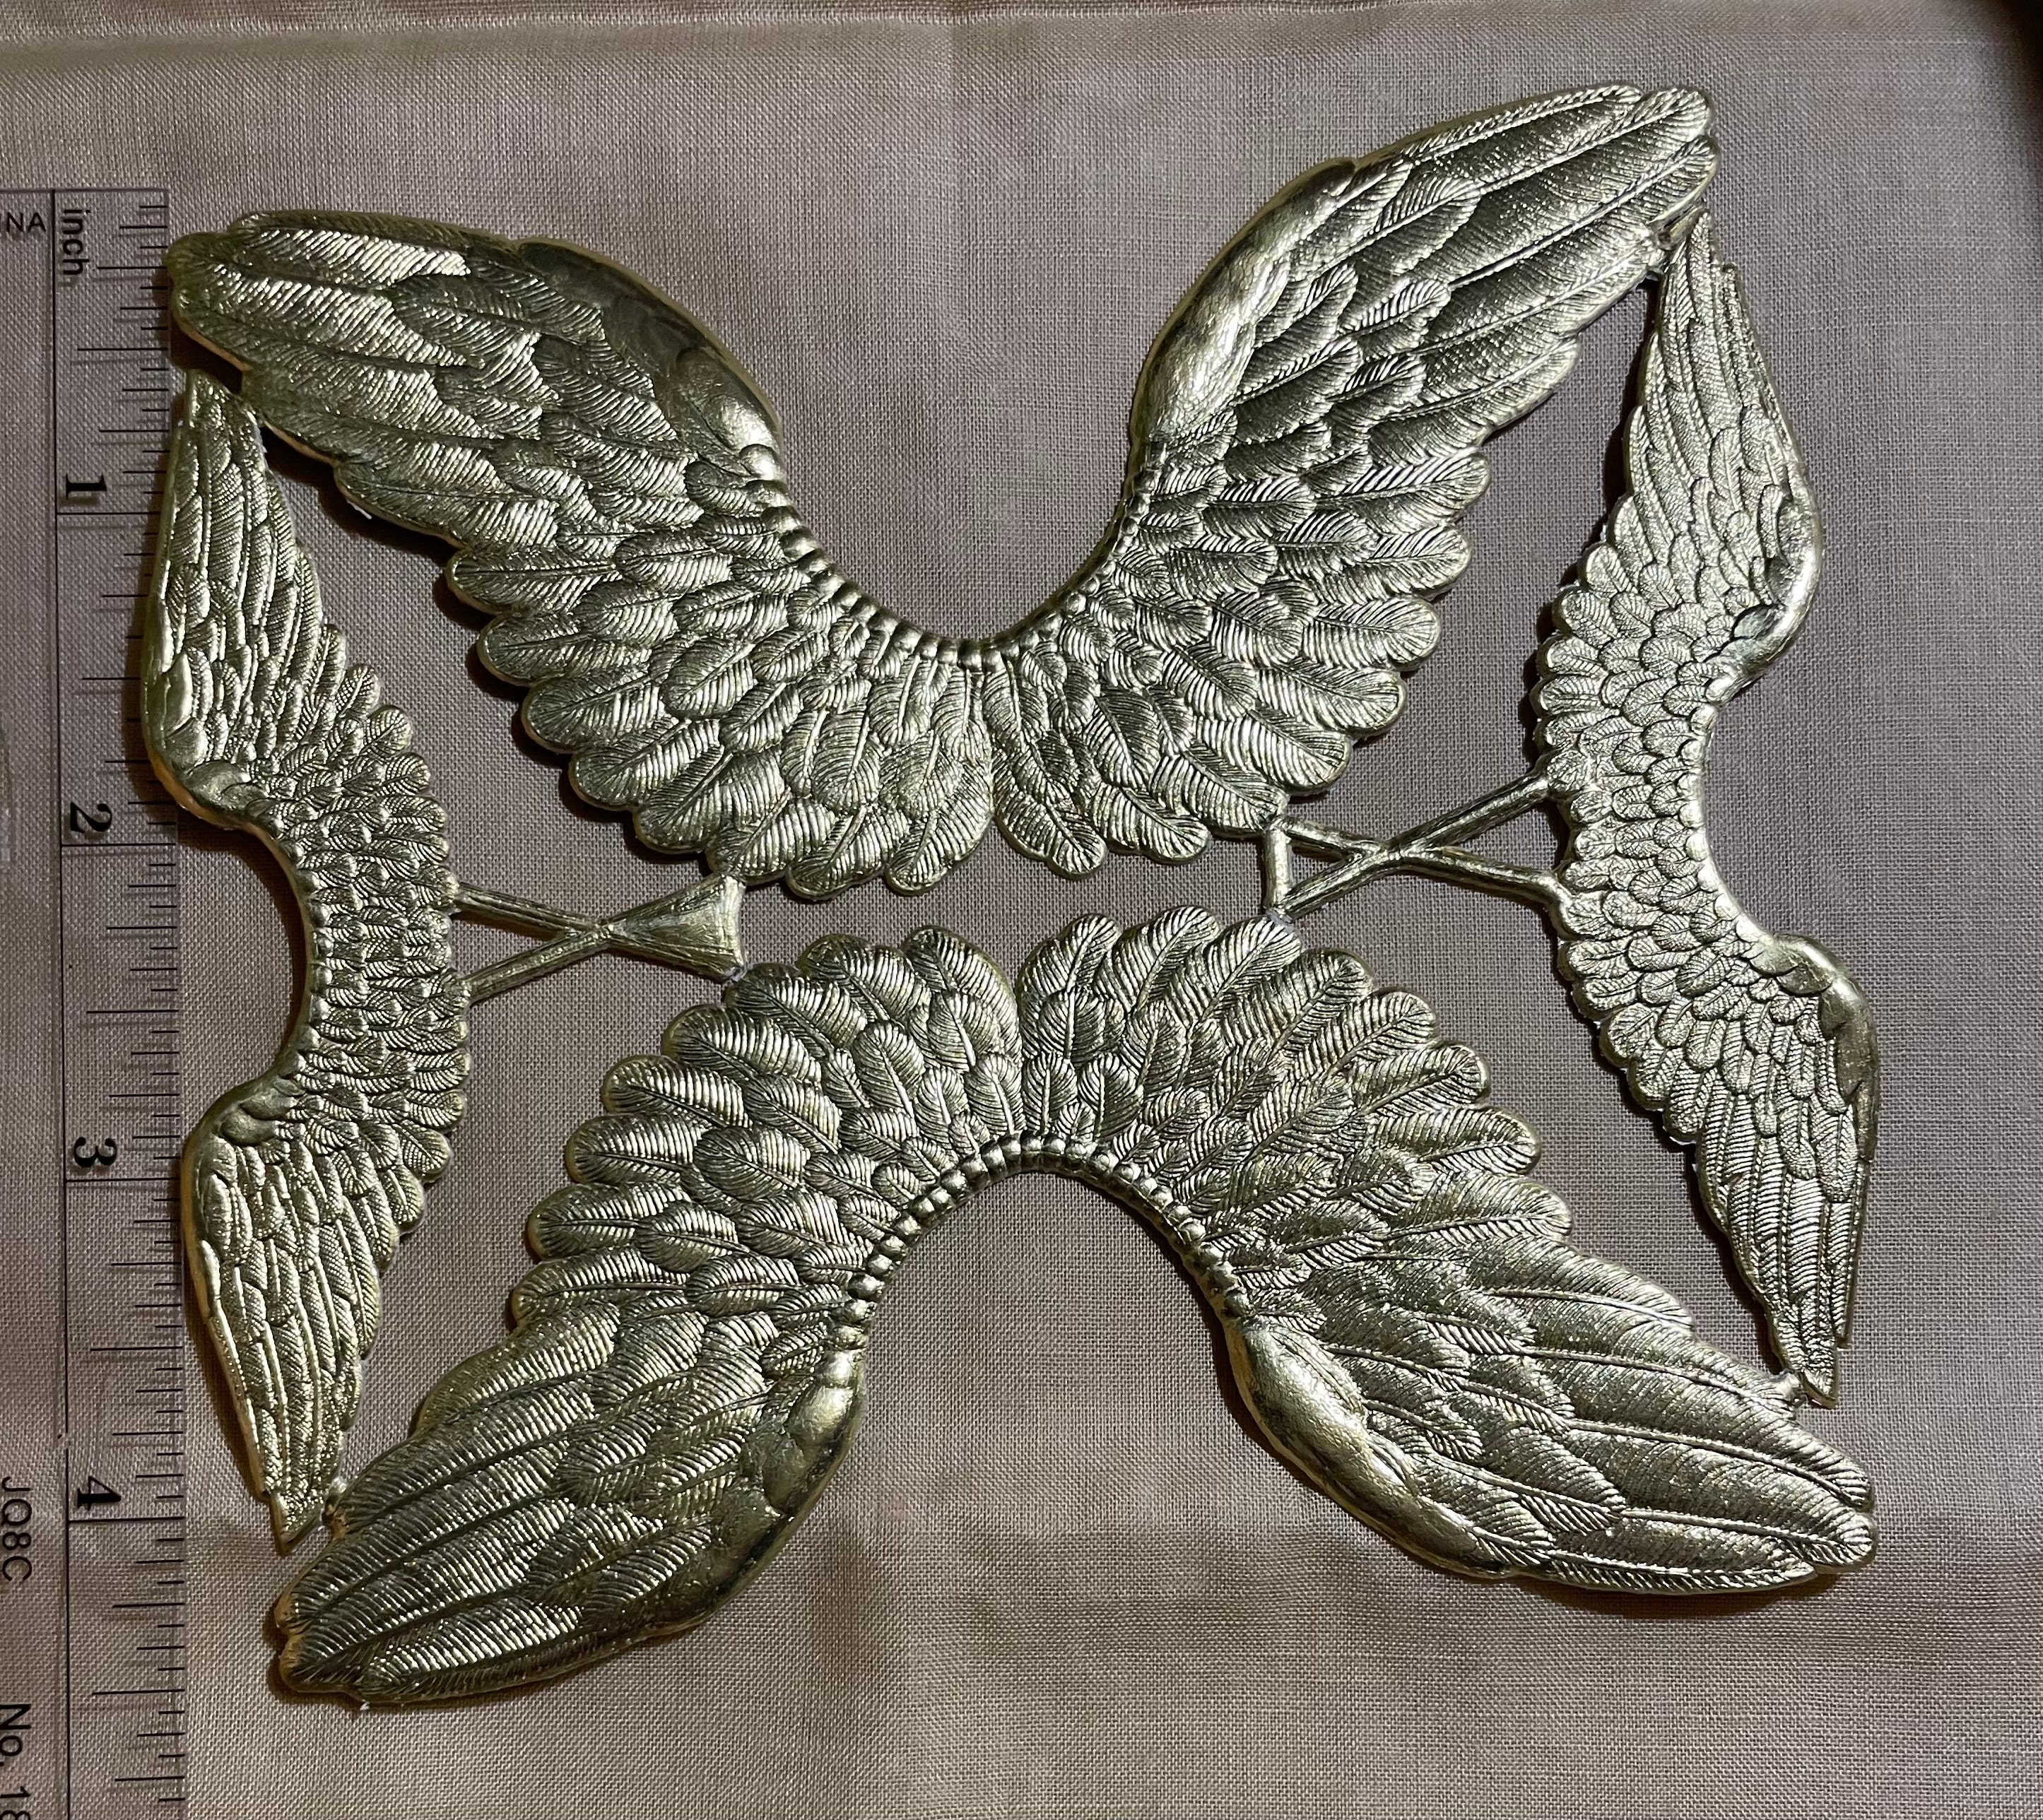 Paper Angel Wings - Embossed White Die Cut Dresden Paper Wings, 4